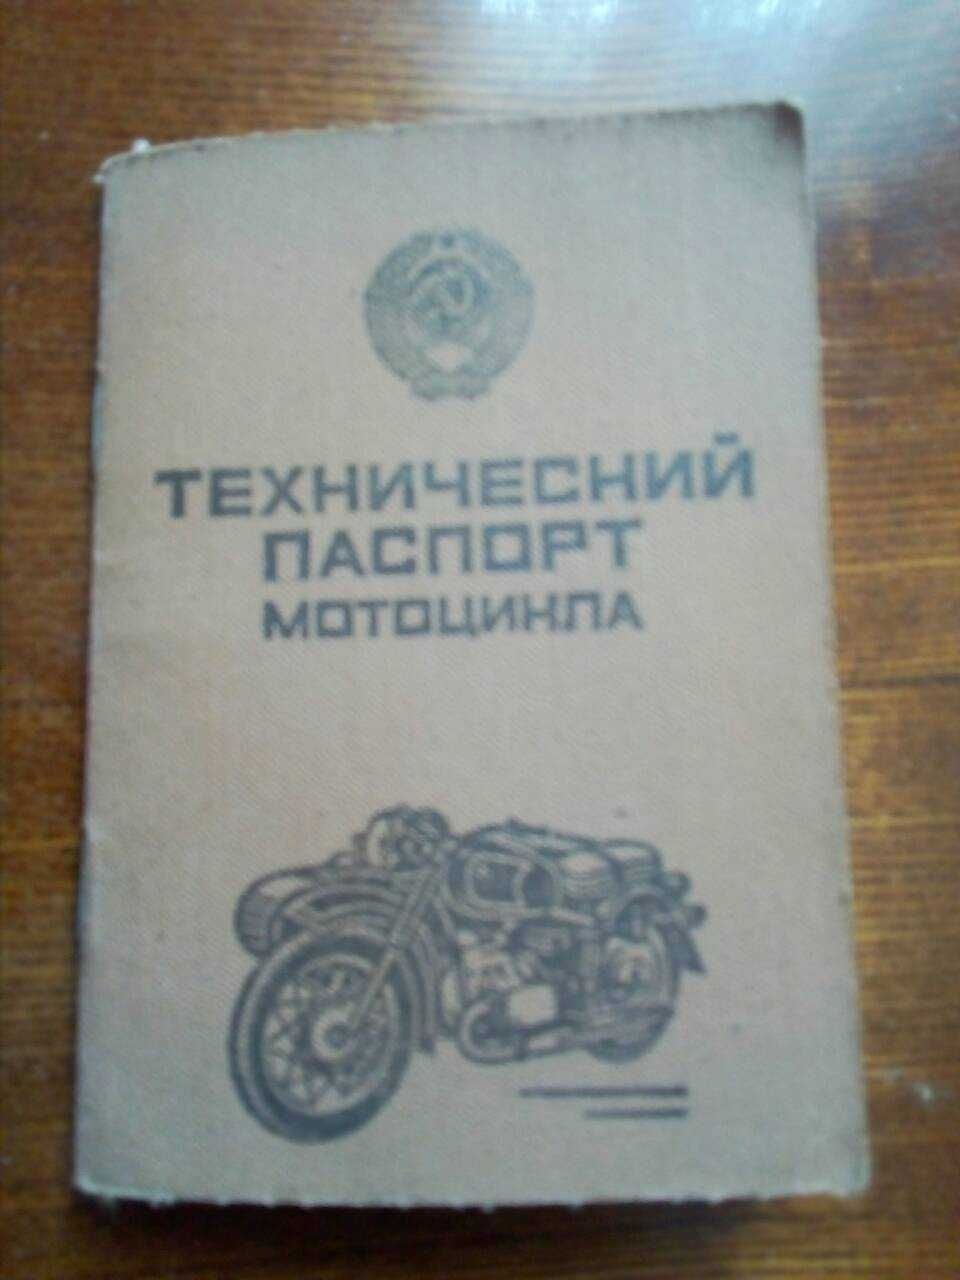 !!!СРОЧНО ПРОДАМ!!!К-750 мотоцикл 1965р